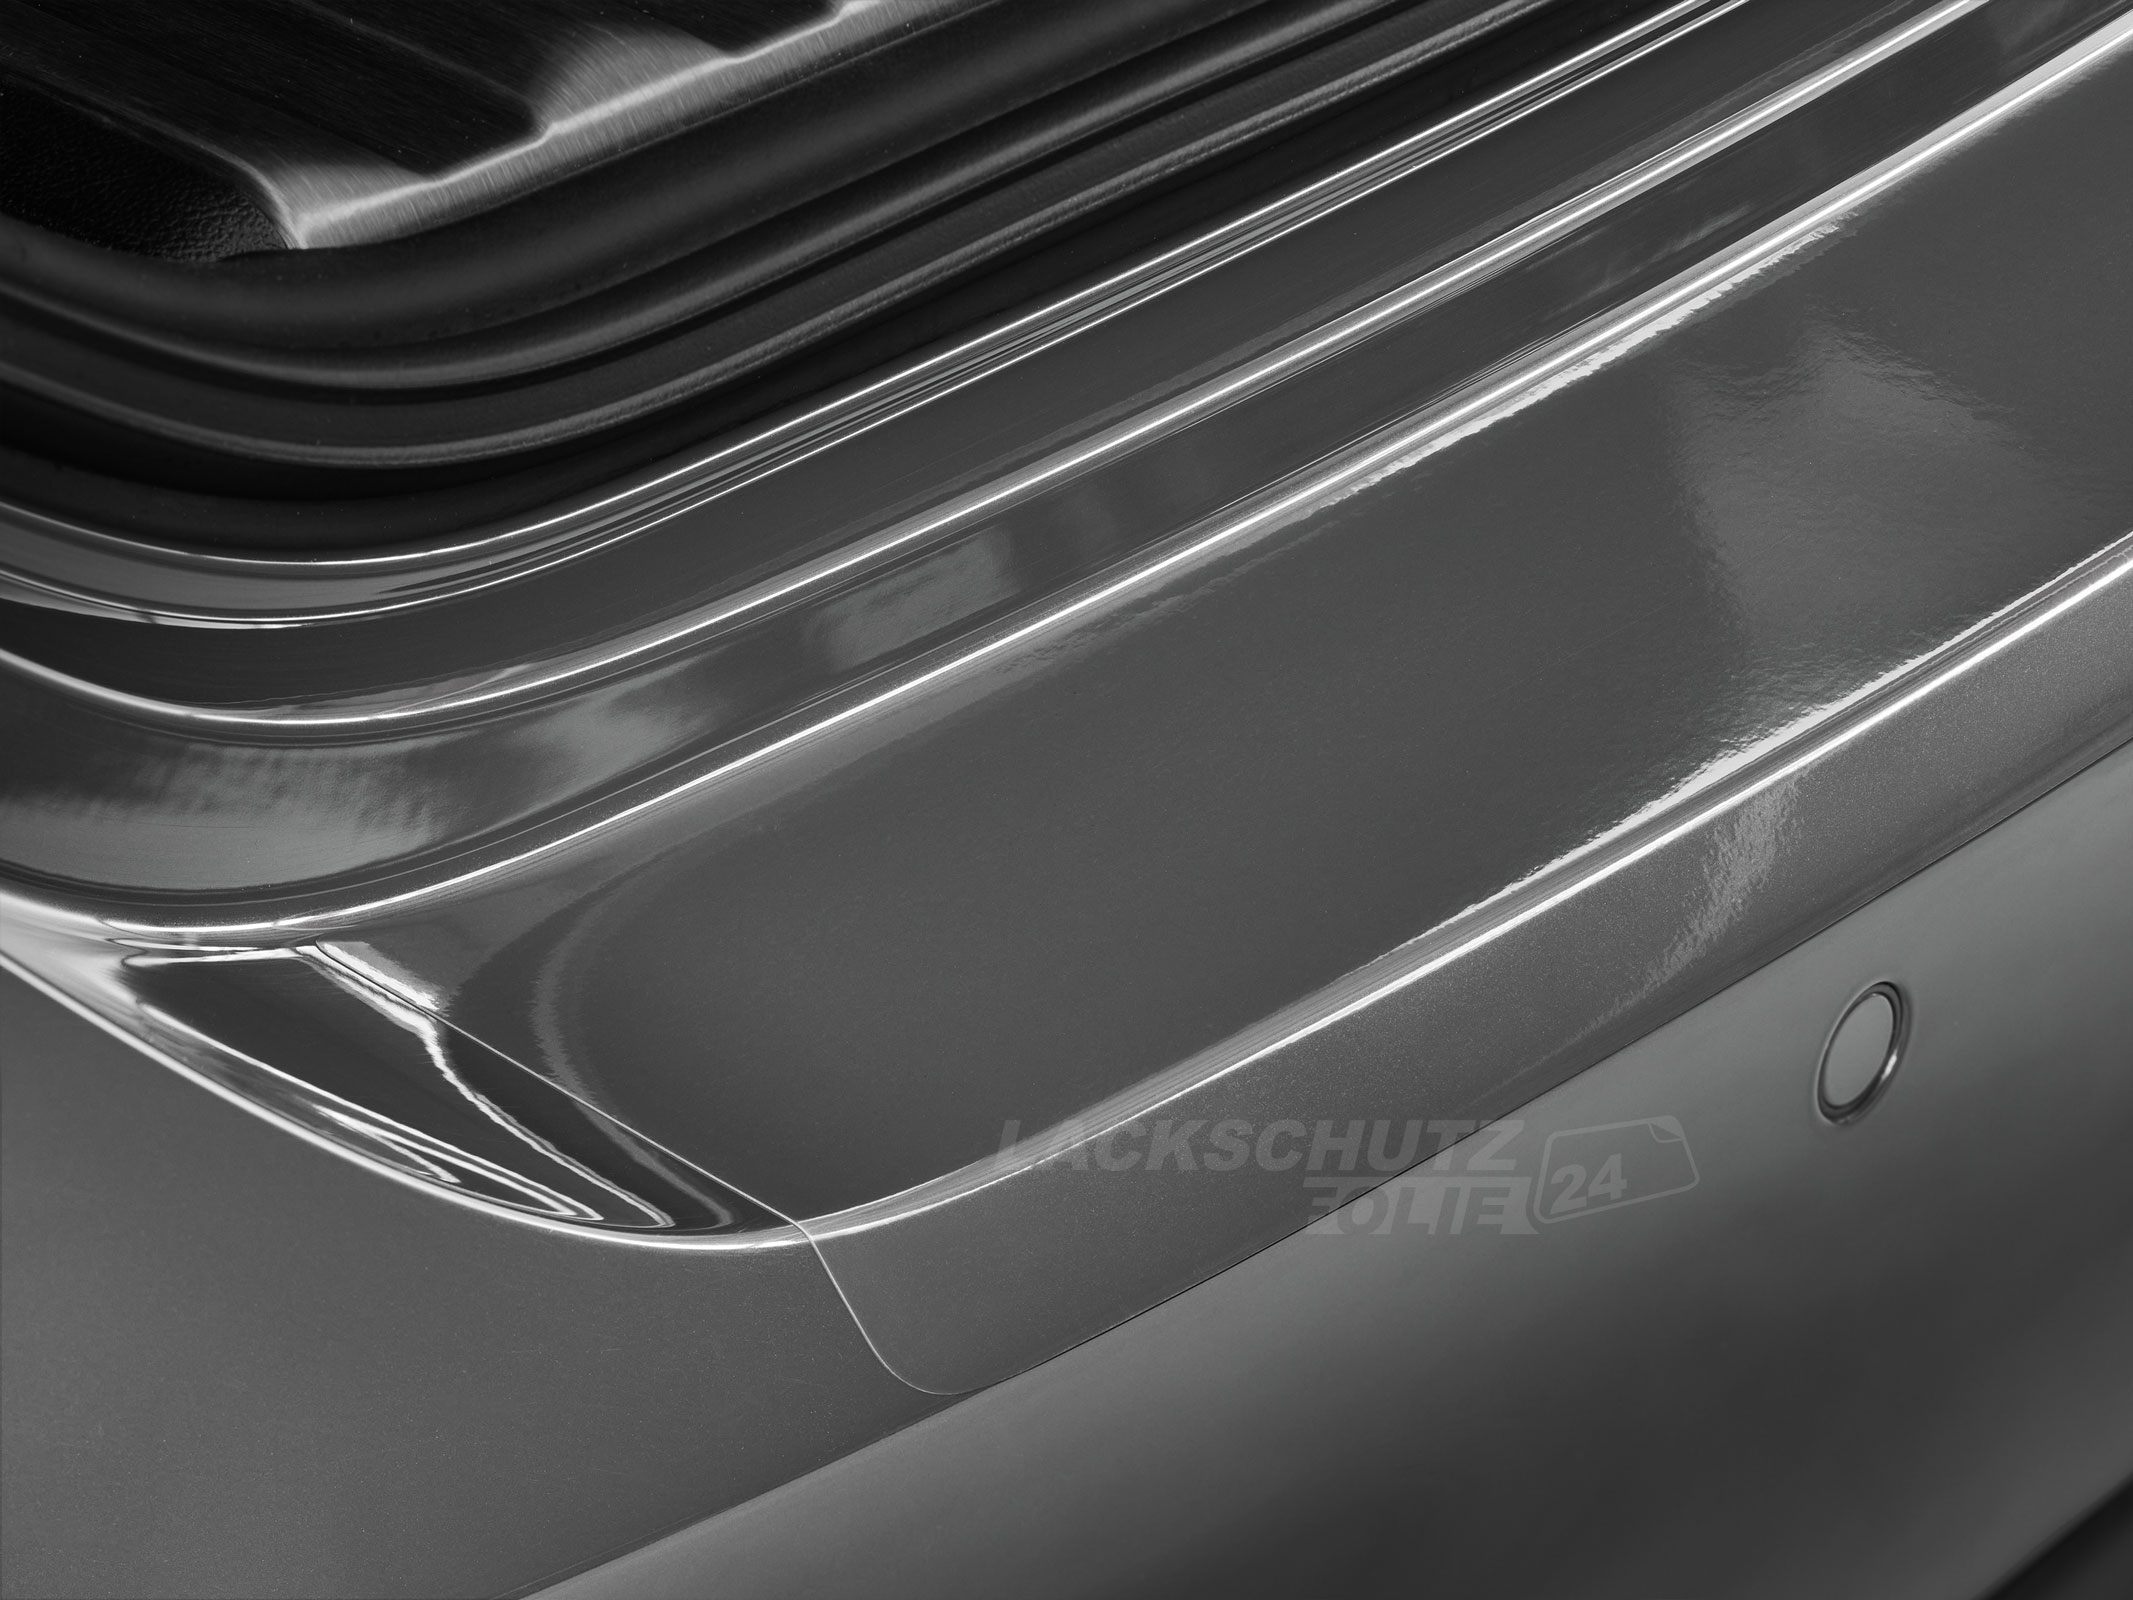 Ladekantenschutzfolie - Transparent Glatt Hochglänzend 150 µm stark für Seat Alhambra (I) Typ 7M9, Facelift, BJ 2000-2010